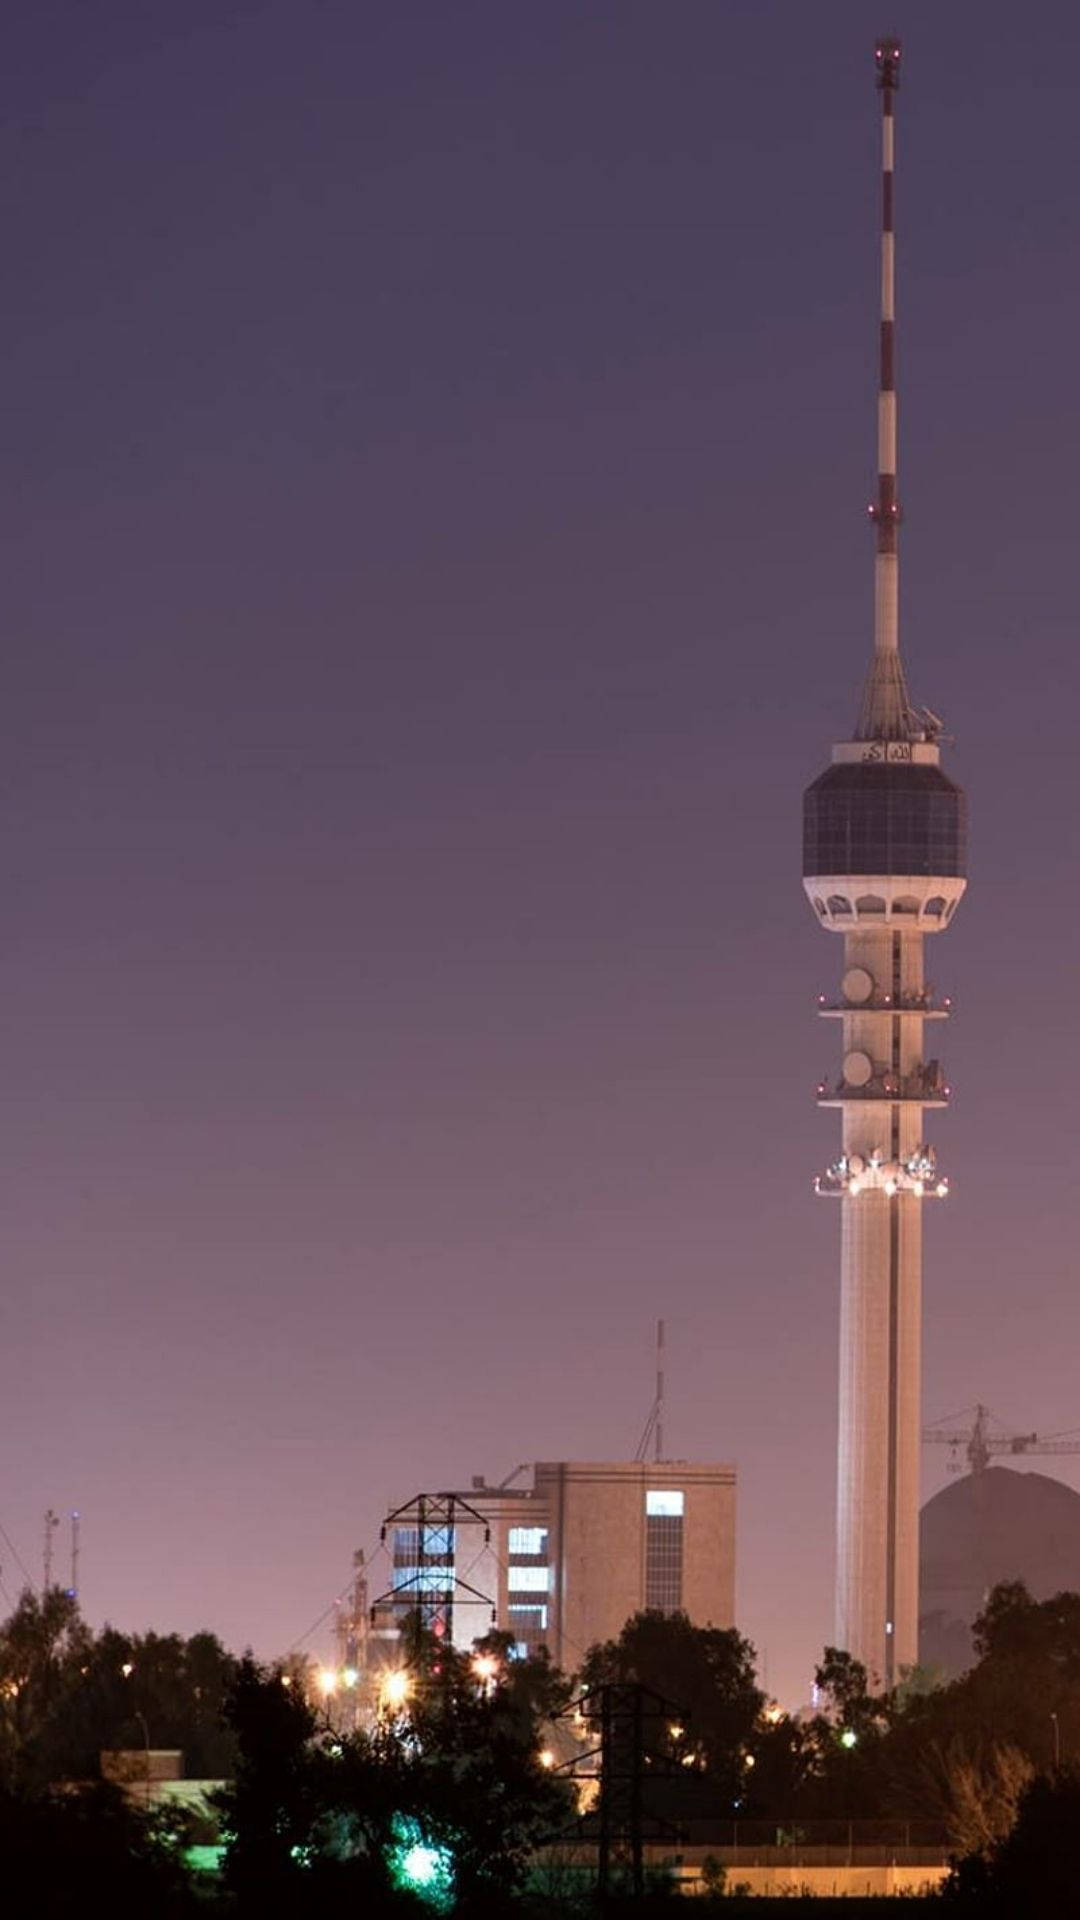 Baghdad Tower At Dawn